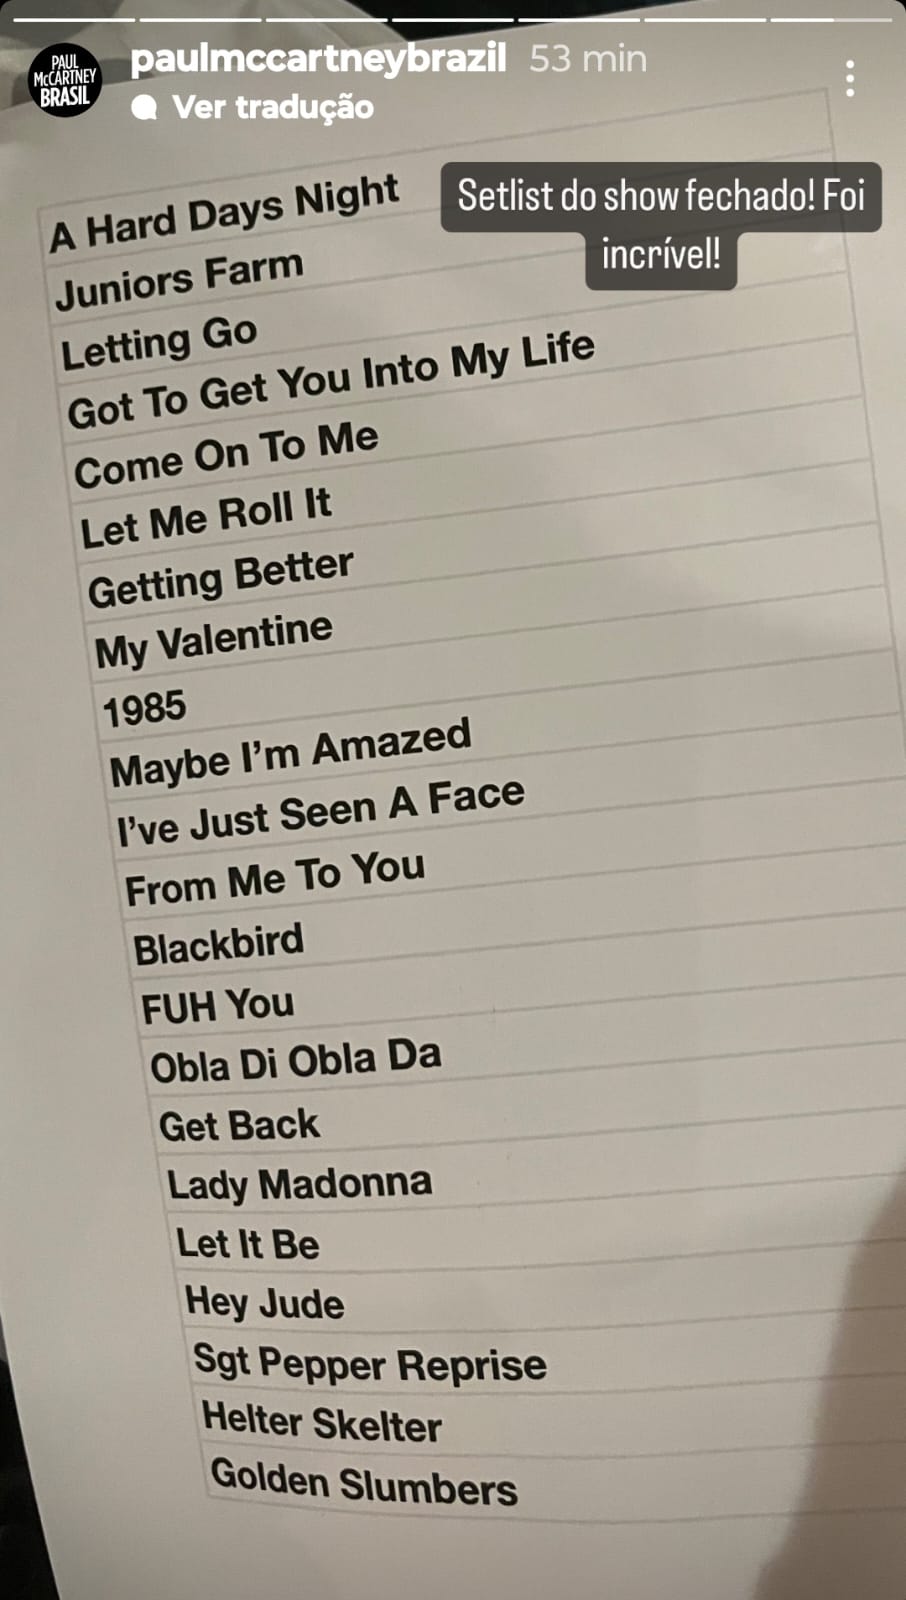 Imagem da setlist cantanda por Paul McCartney no Clube do Choro em Brasília